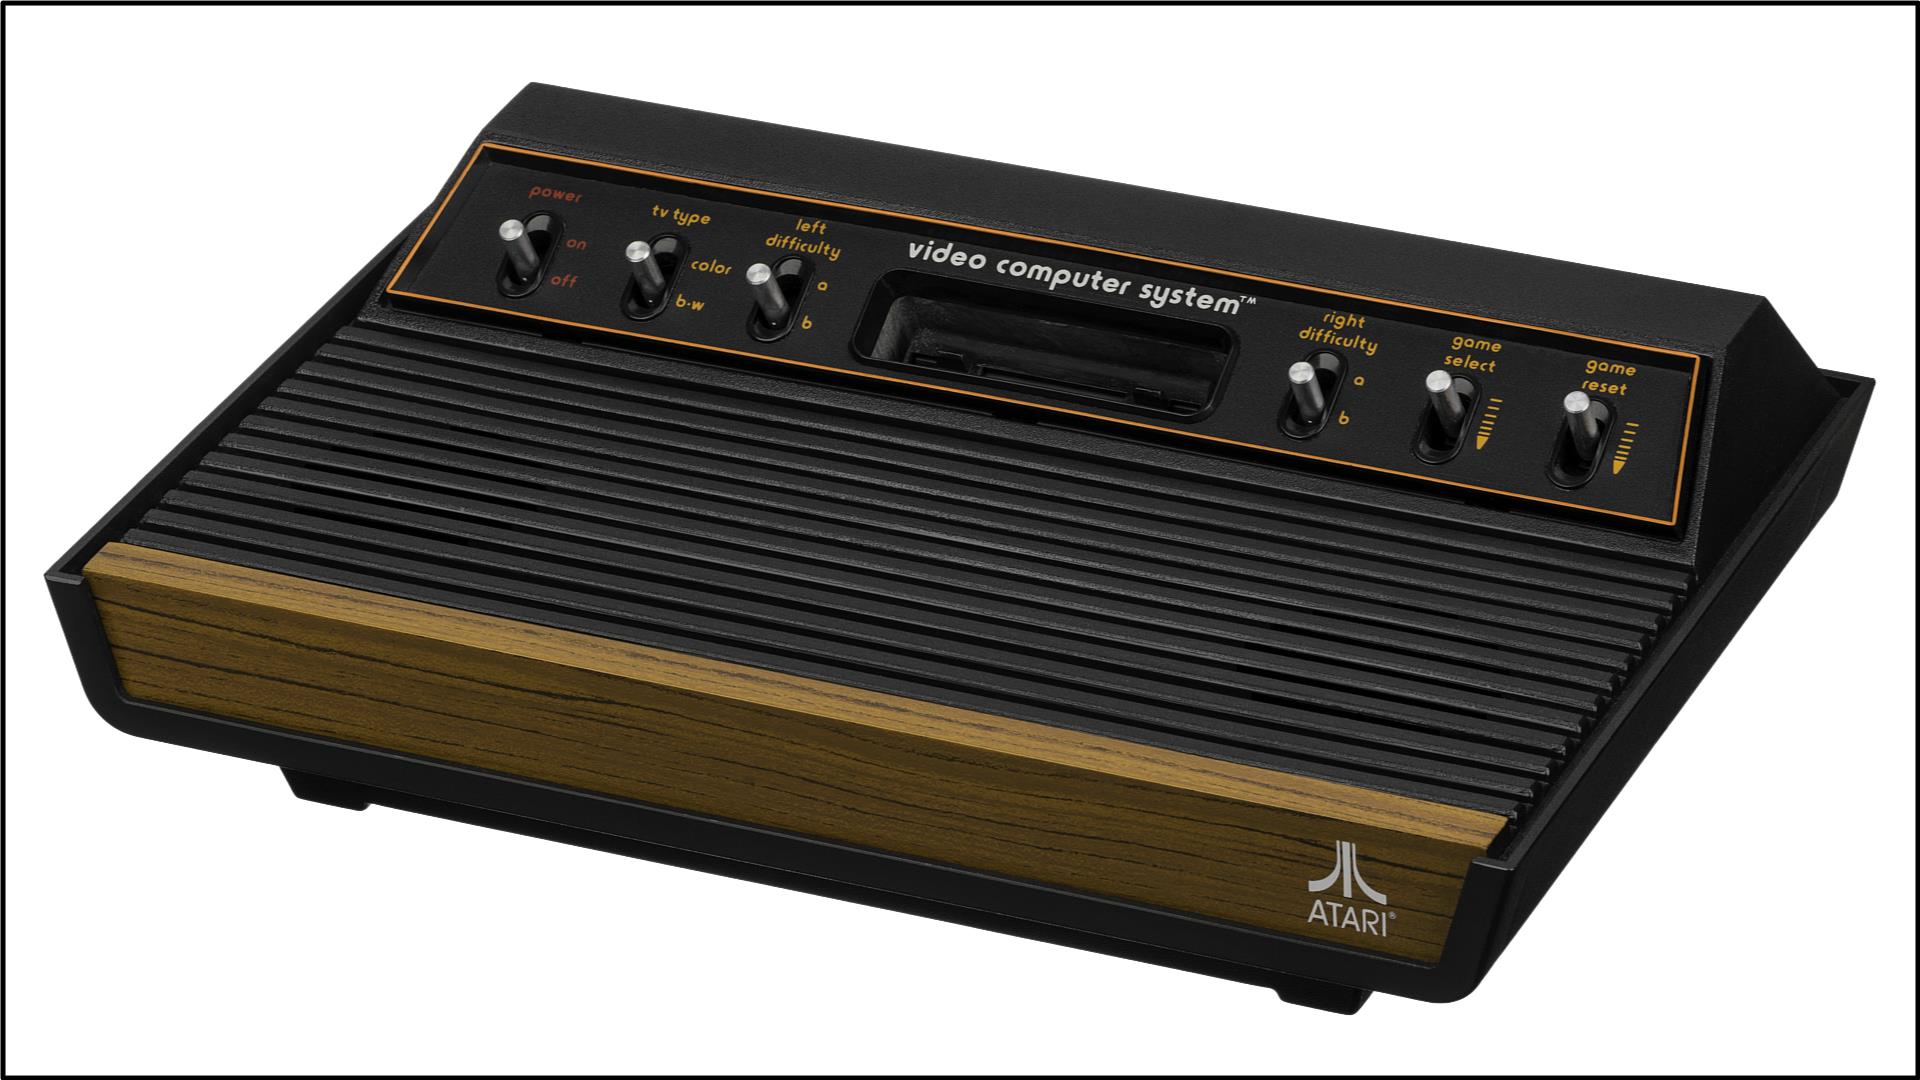 2 – Atari 2600